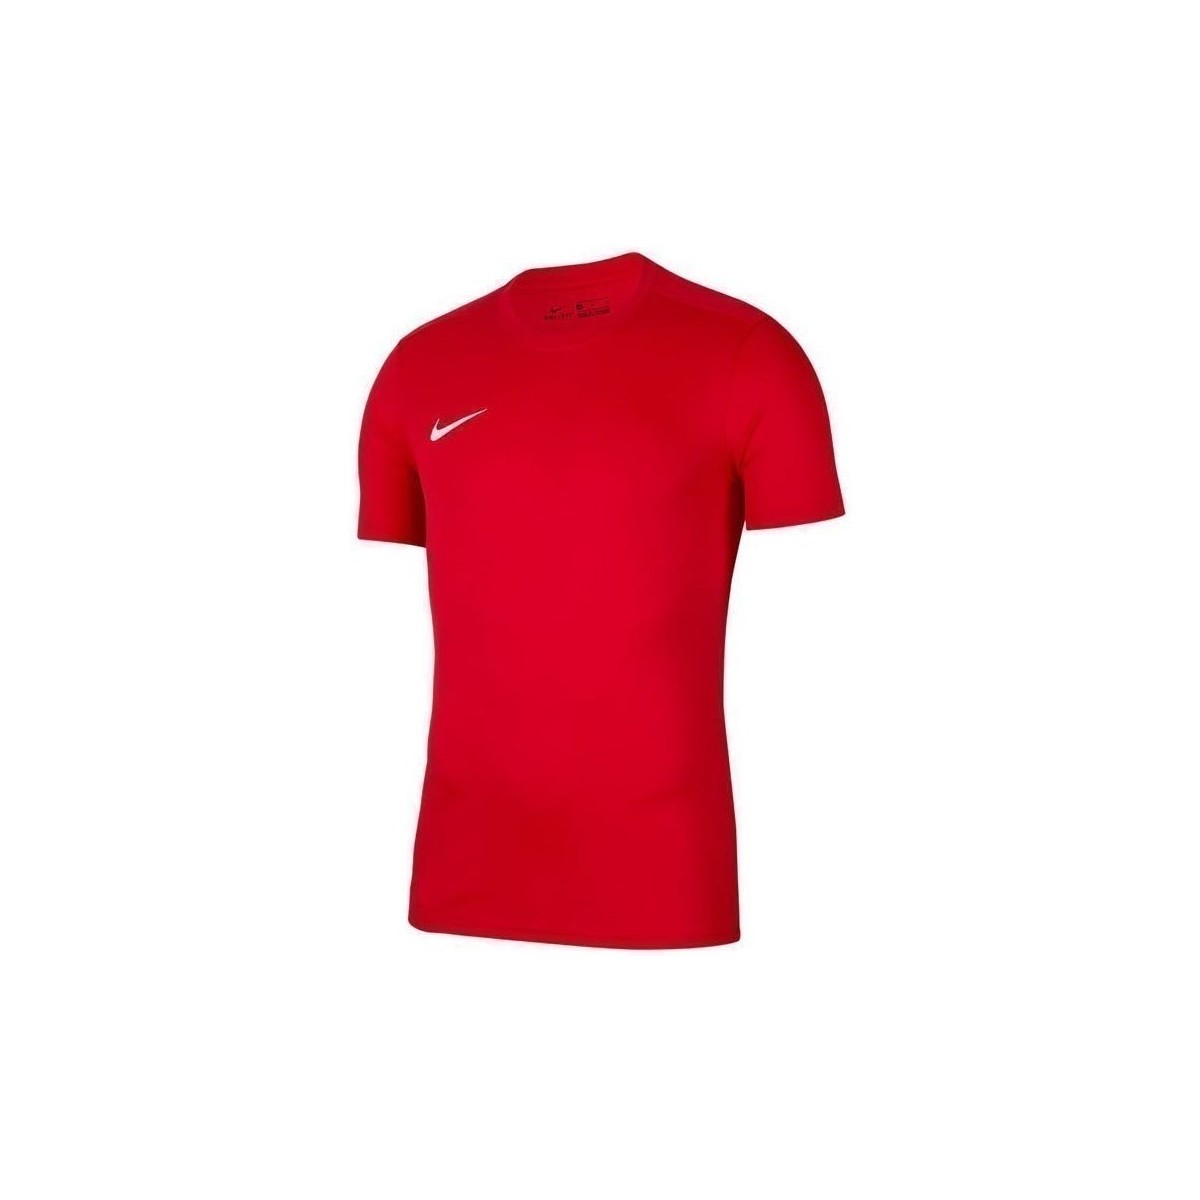 Oblačila Dečki Majice s kratkimi rokavi Nike JR Dry Park Vii Rdeča